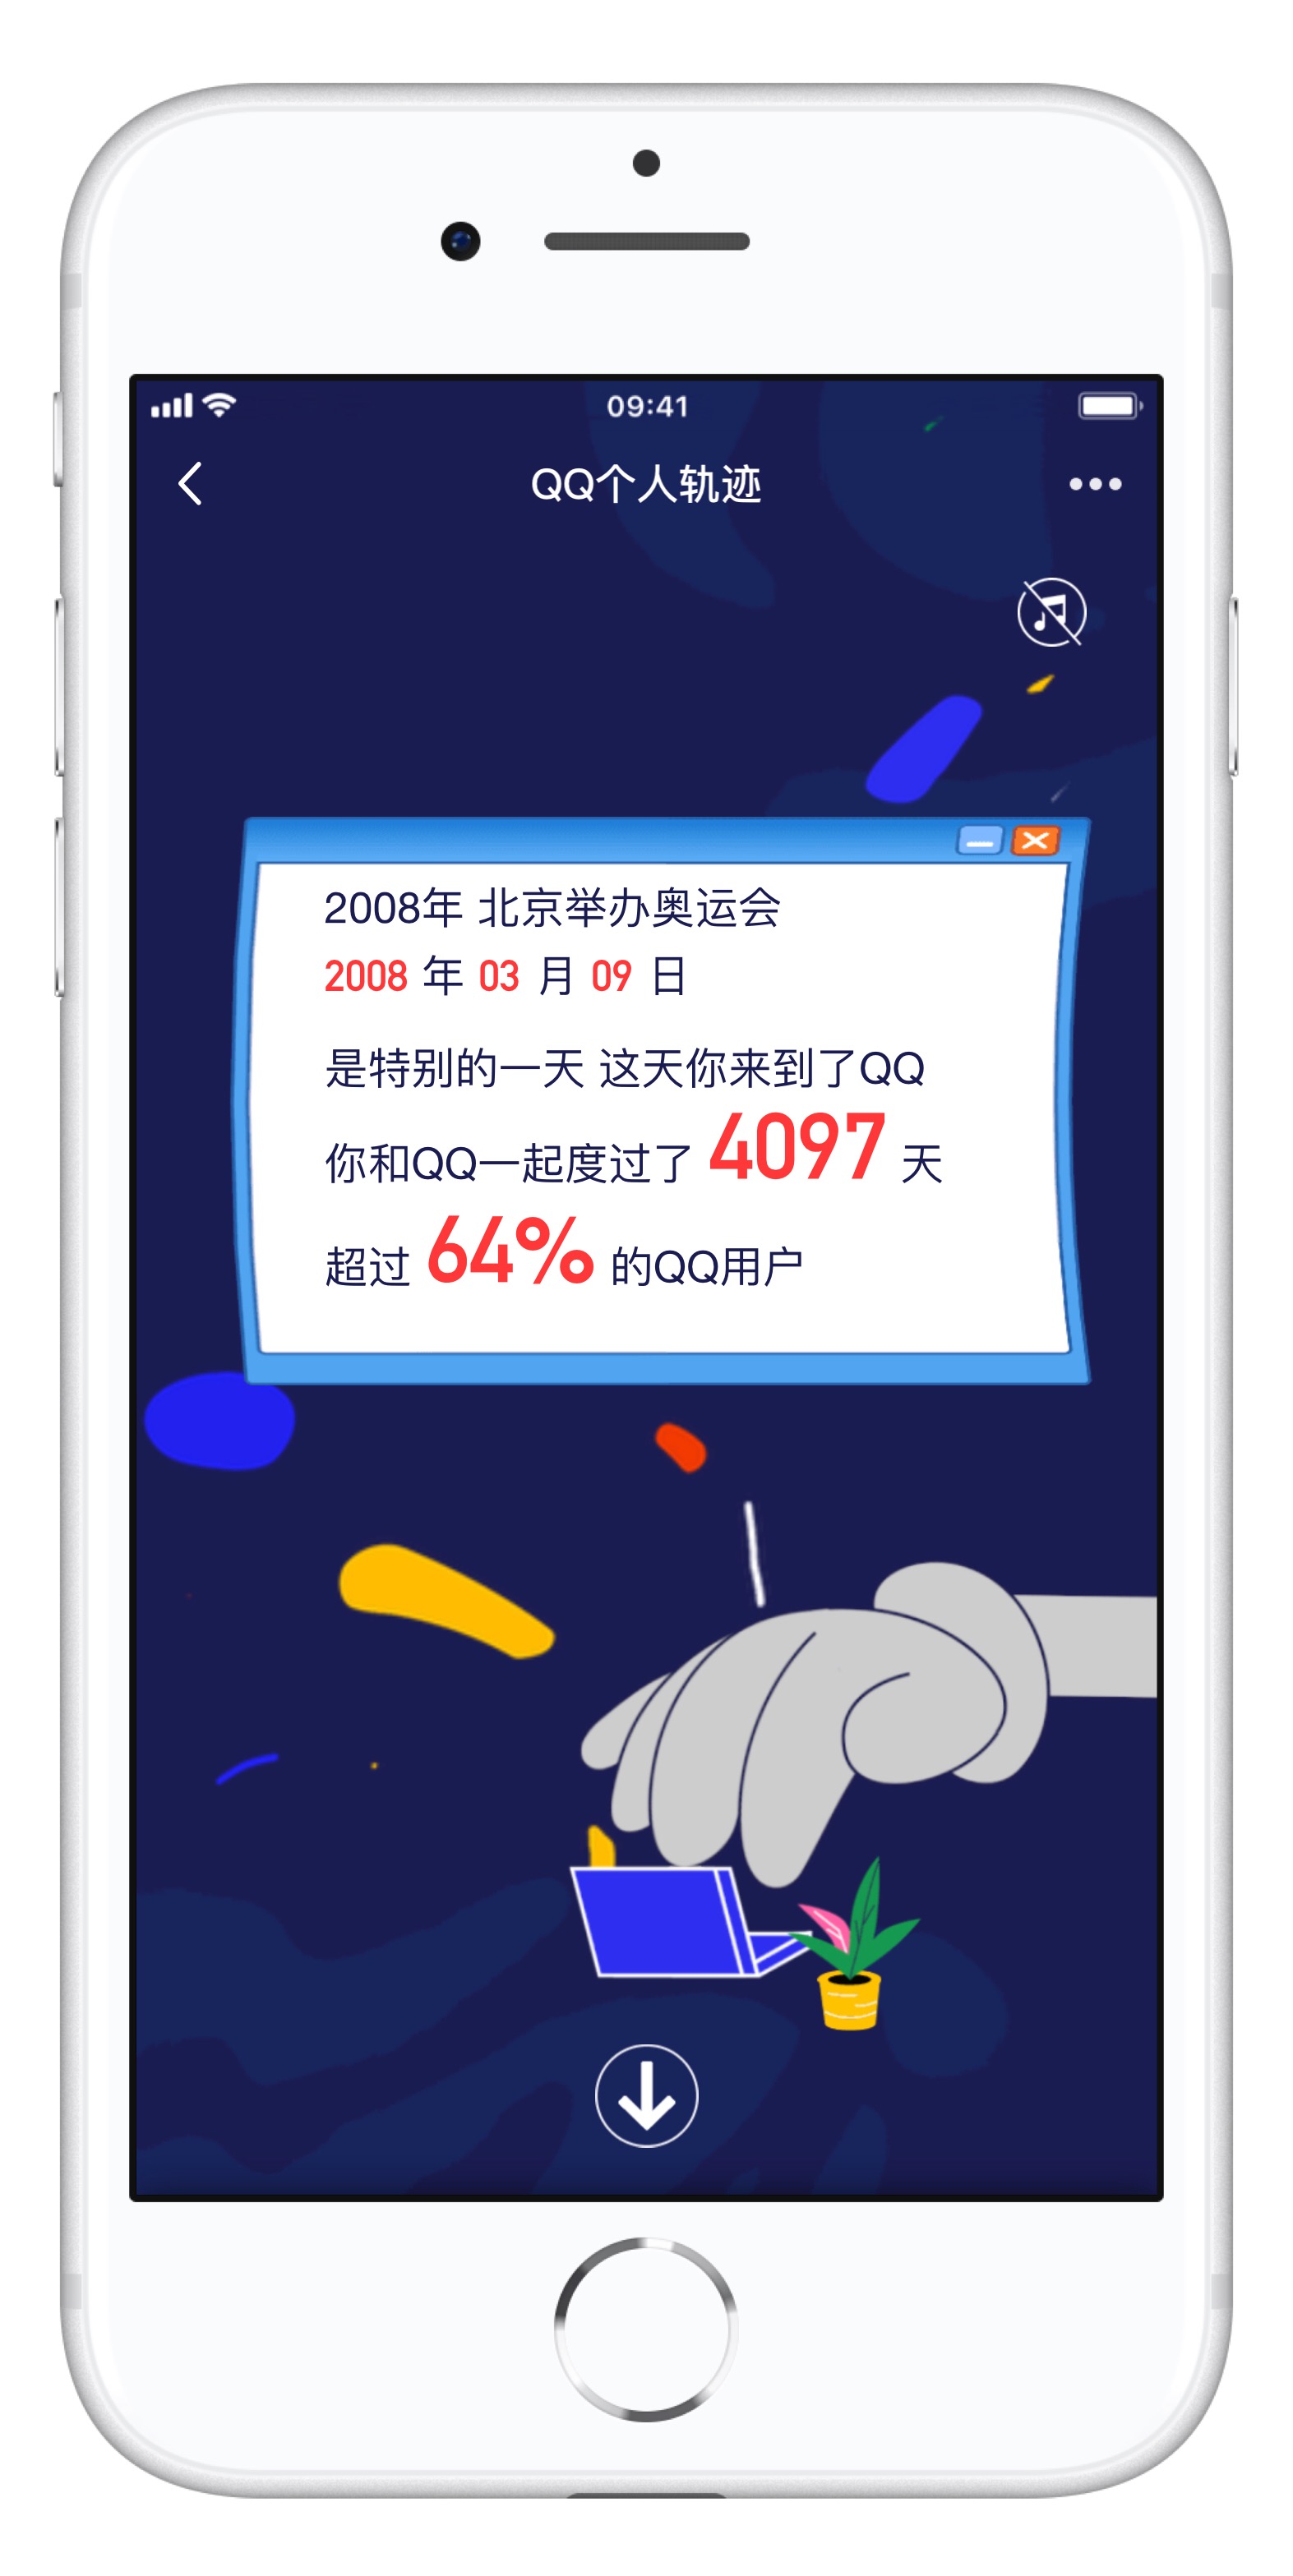 腾讯 QQ 个人轨迹查询地址 | 如何用 iPhone 查看 QQ 个人轨迹页面？